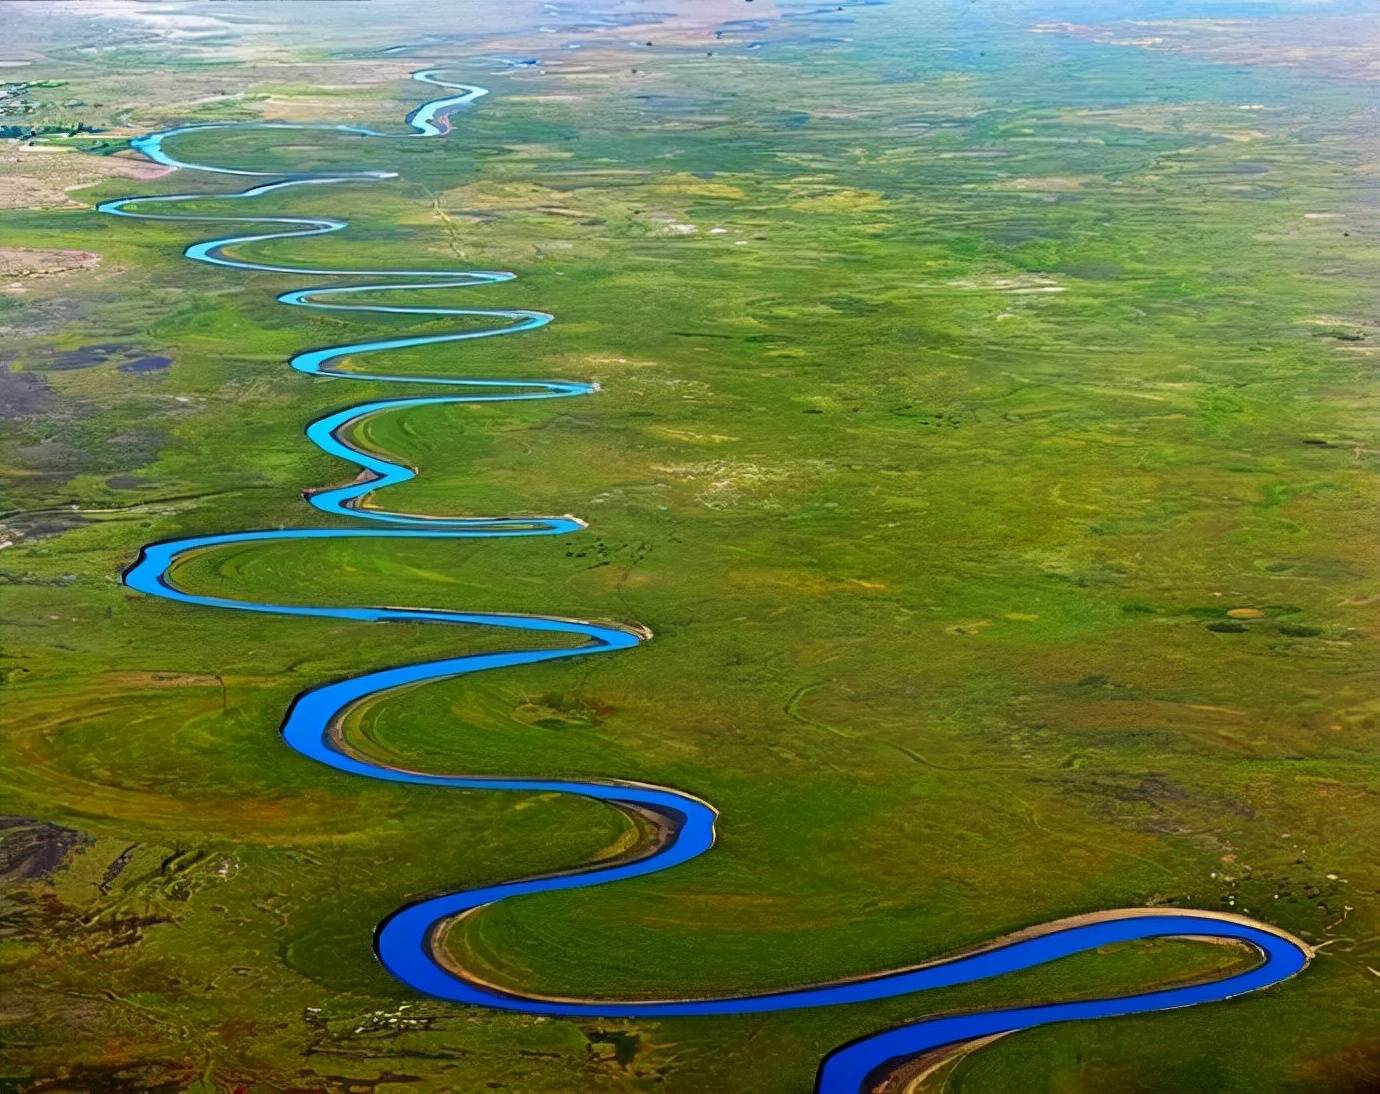 长江也是一样,蜿蜒曲折,特别是四川至湖北都几乎也是九曲十八弯